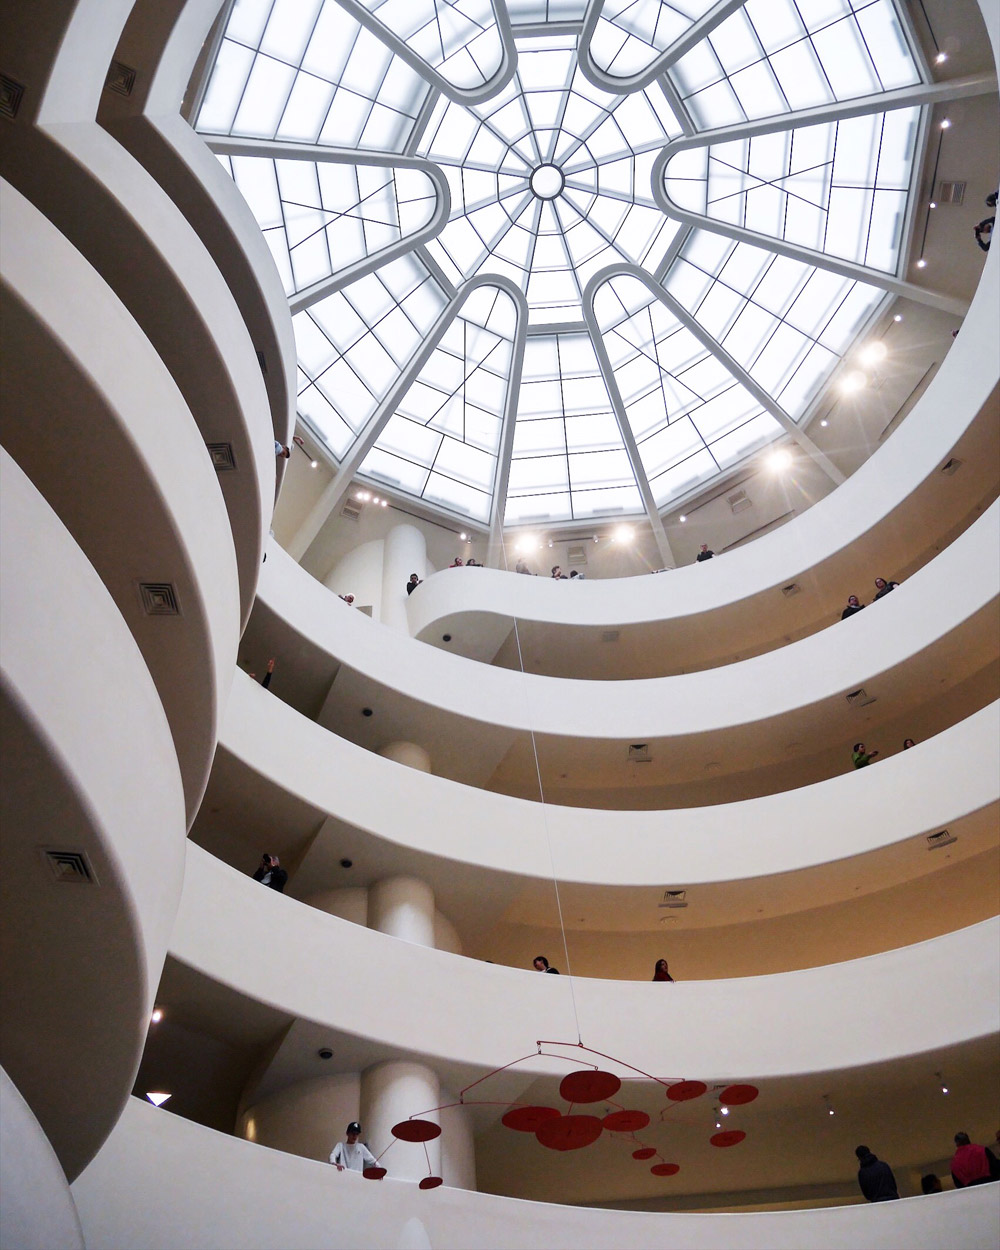 The Guggenheim, New York City